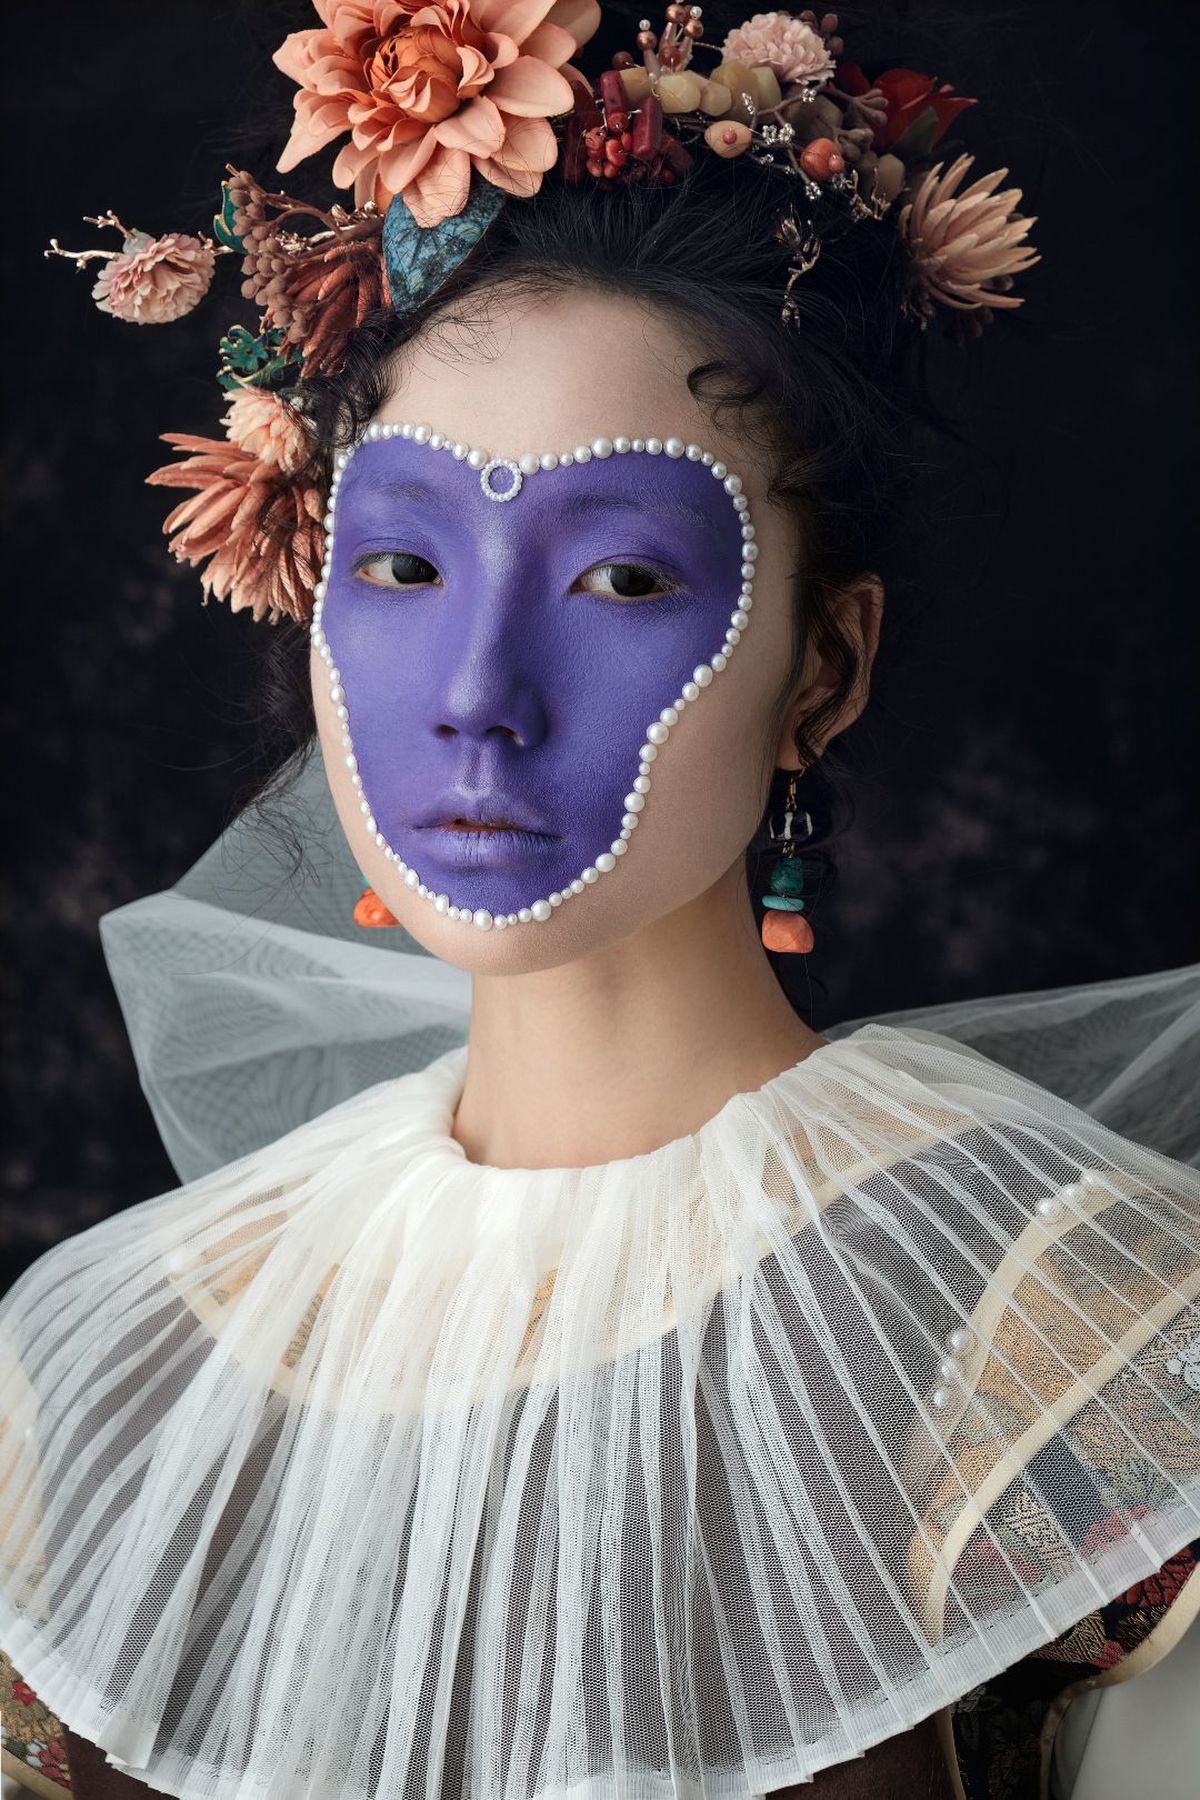 一位身着盛装 脸上饰有花卉图案 头戴面纱的女士的肖像